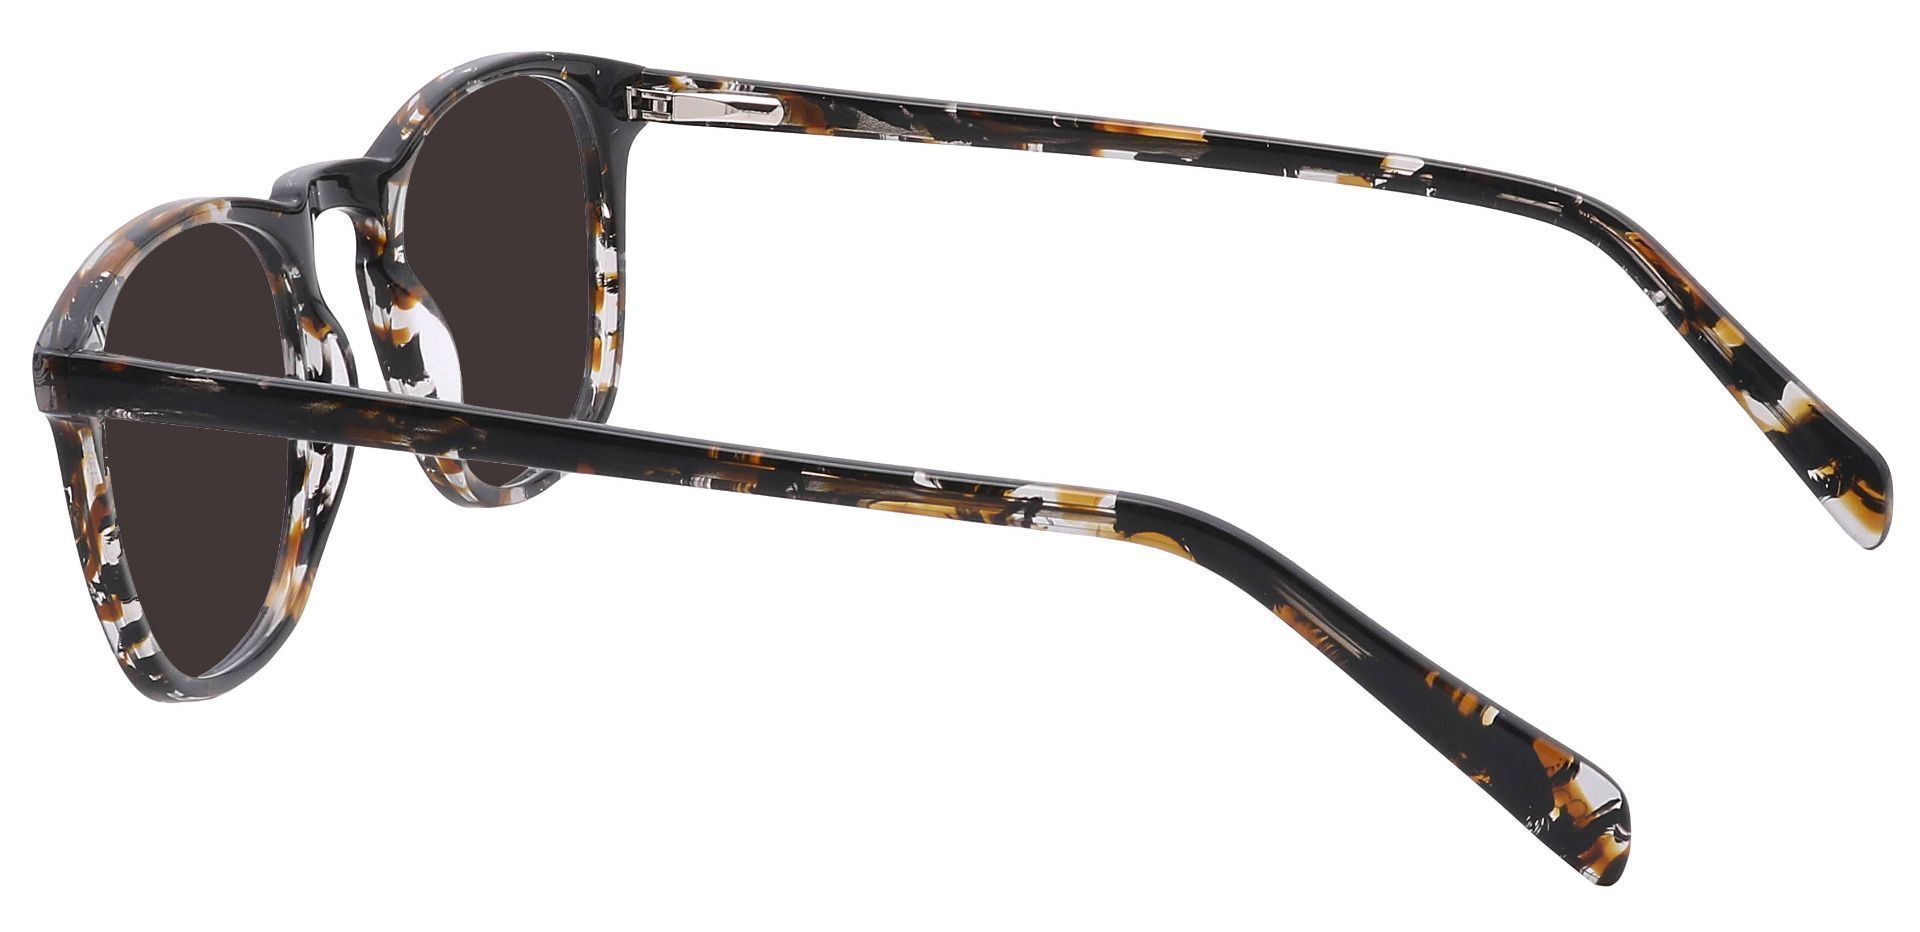 Venti Square Prescription Sunglasses - Black Frame With Gray Lenses